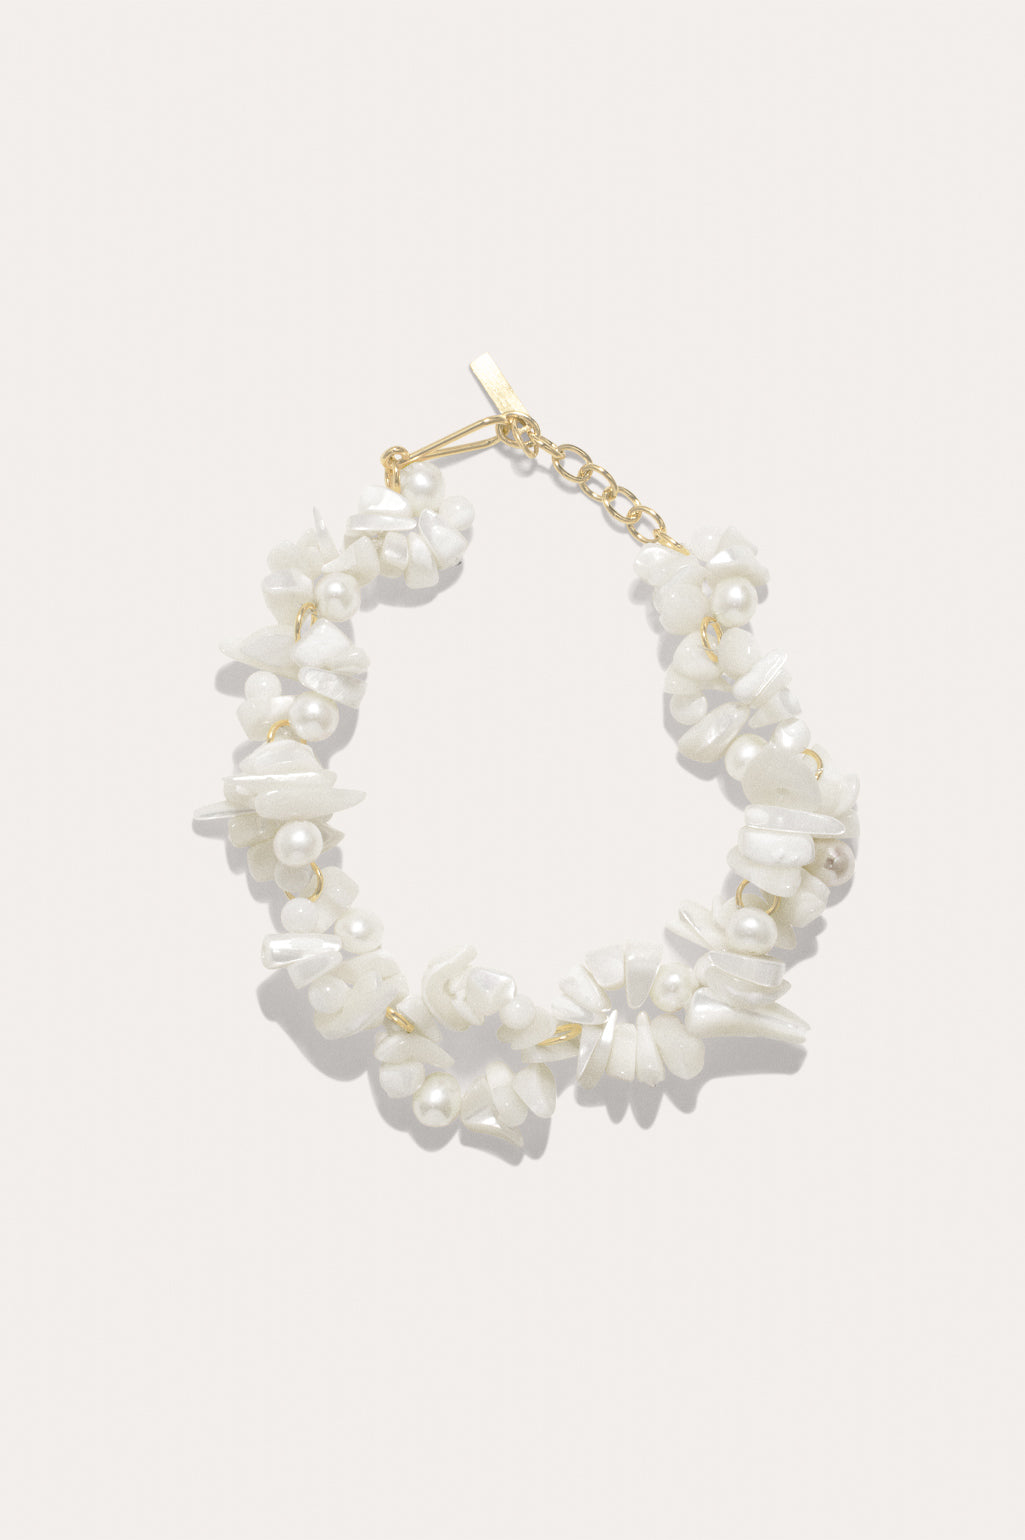 White Mother of Pearl Flower Bracelet gold